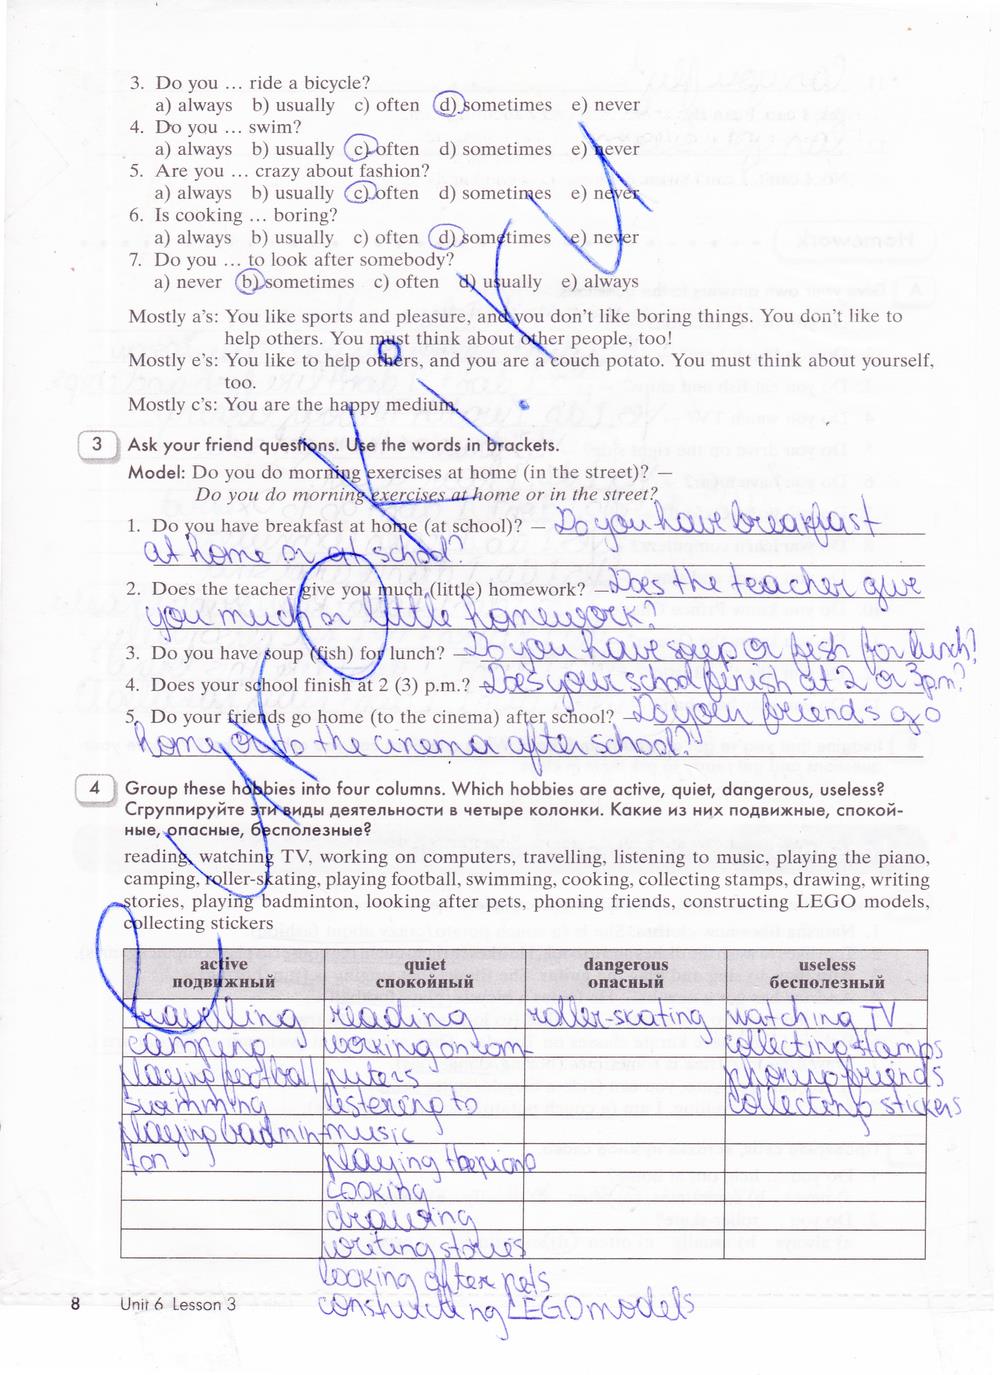 гдз 5 класс рабочая тетрадь часть 2 страница 8 английский язык Кауфман